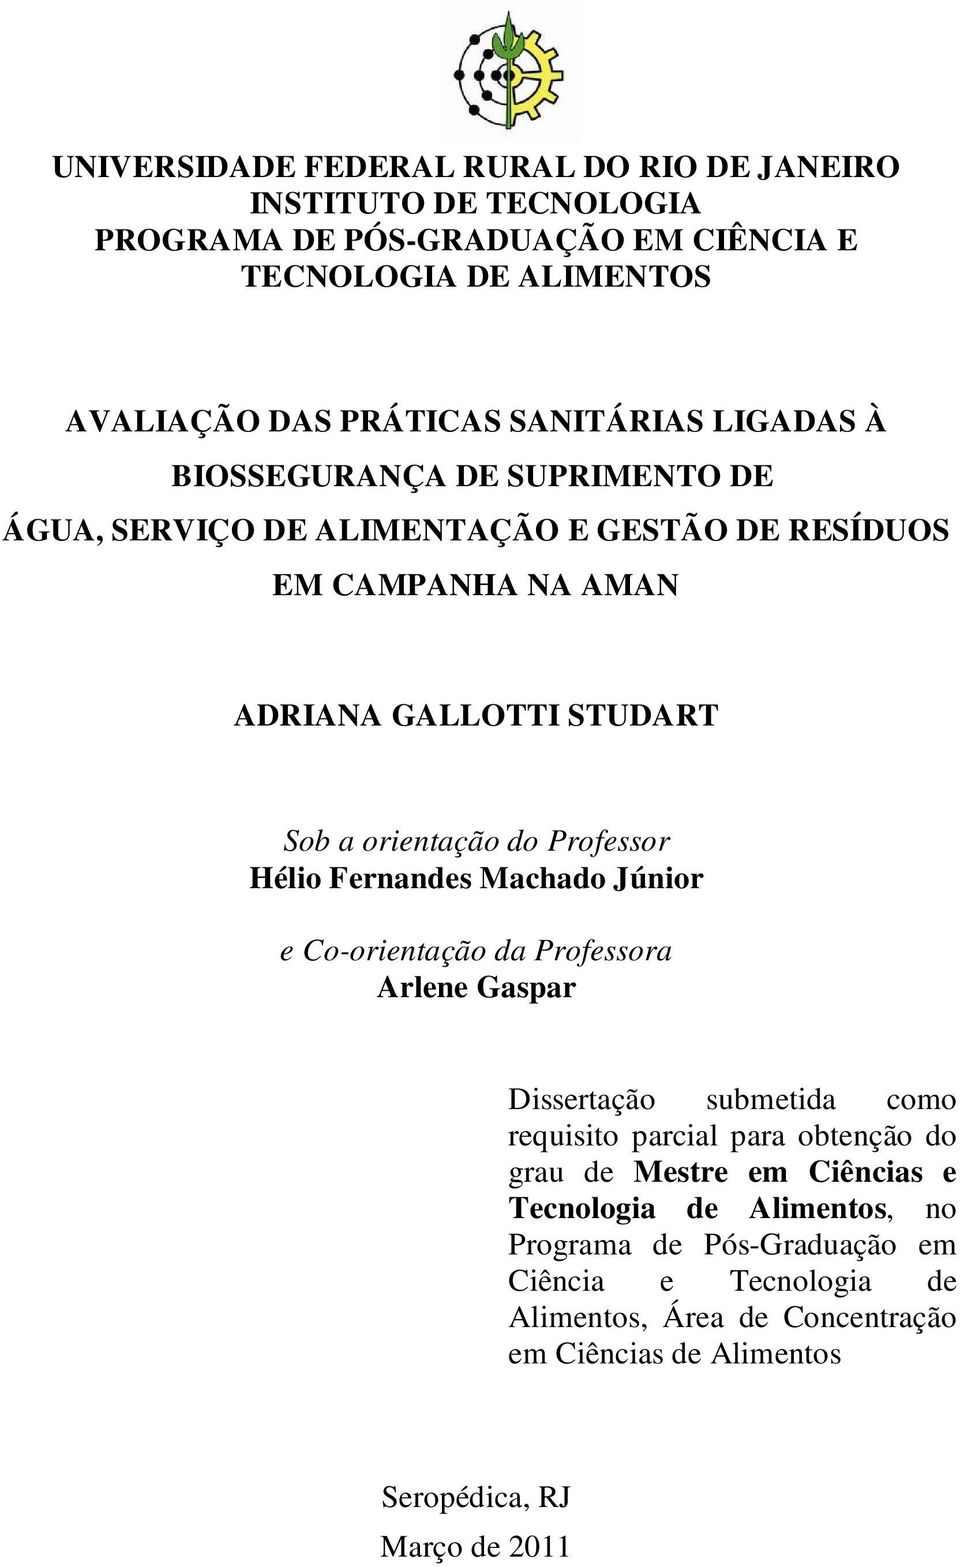 Hélio Fernandes Machado Júnior e Co-orientação da Professora Arlene Gaspar Dissertação submetida como requisito parcial para obtenção do grau de Mestre em Ciências e